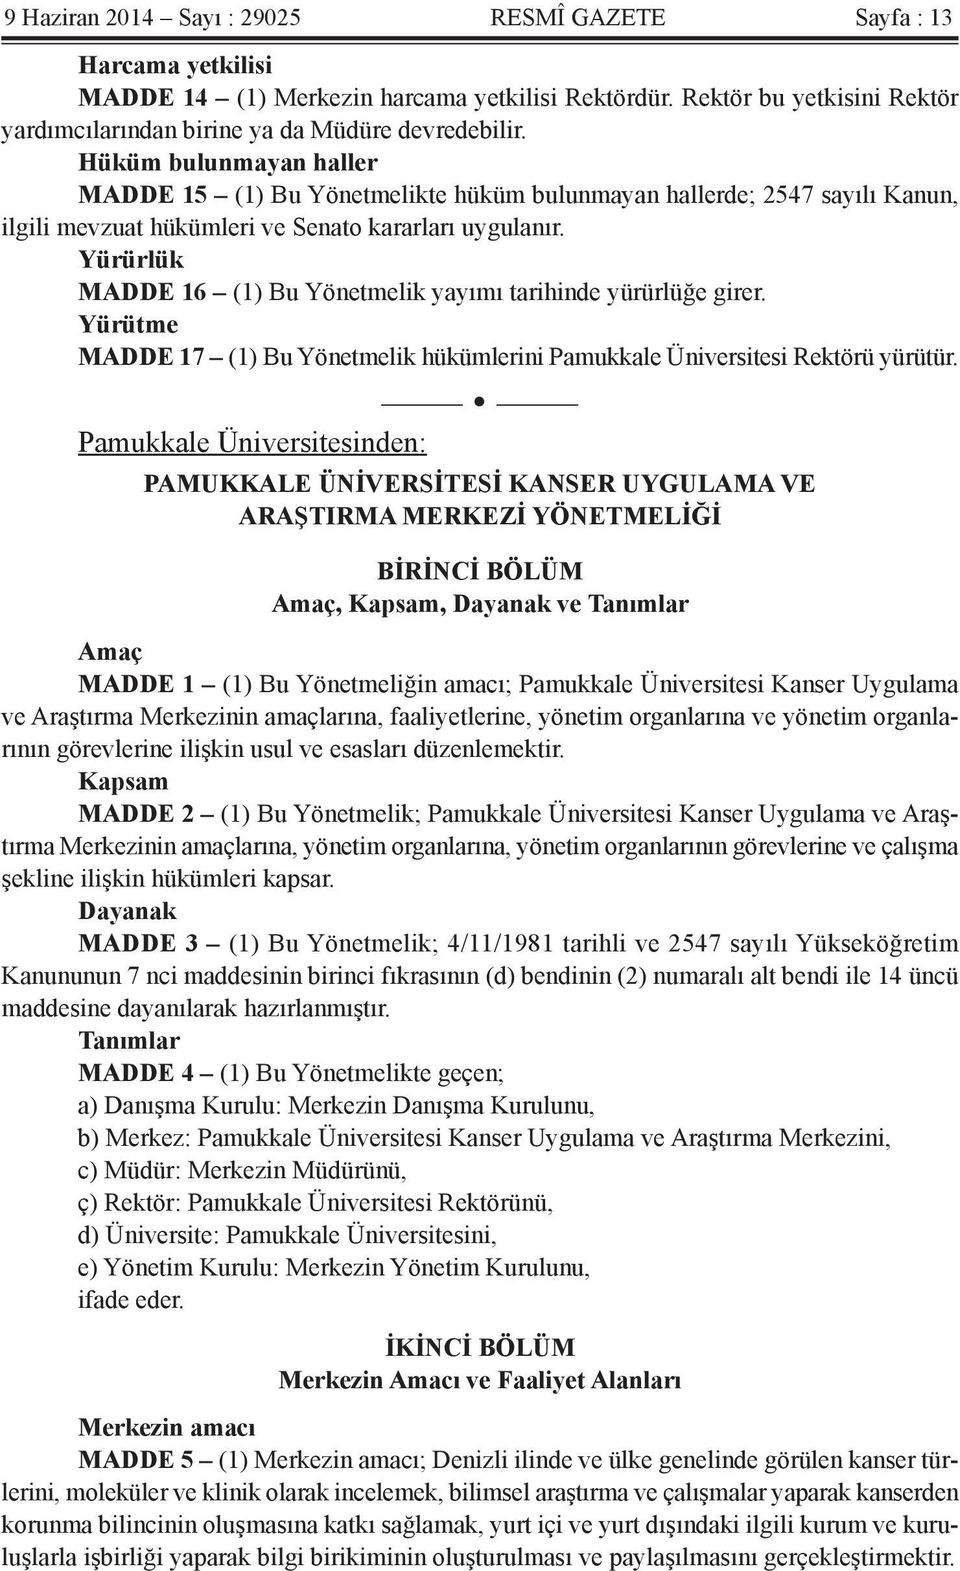 Yürürlük MADDE 16 (1) Bu Yönetmelik yayımı tarihinde yürürlüğe girer. Yürütme MADDE 17 (1) Bu Yönetmelik hükümlerini Pamukkale Üniversitesi Rektörü yürütür.